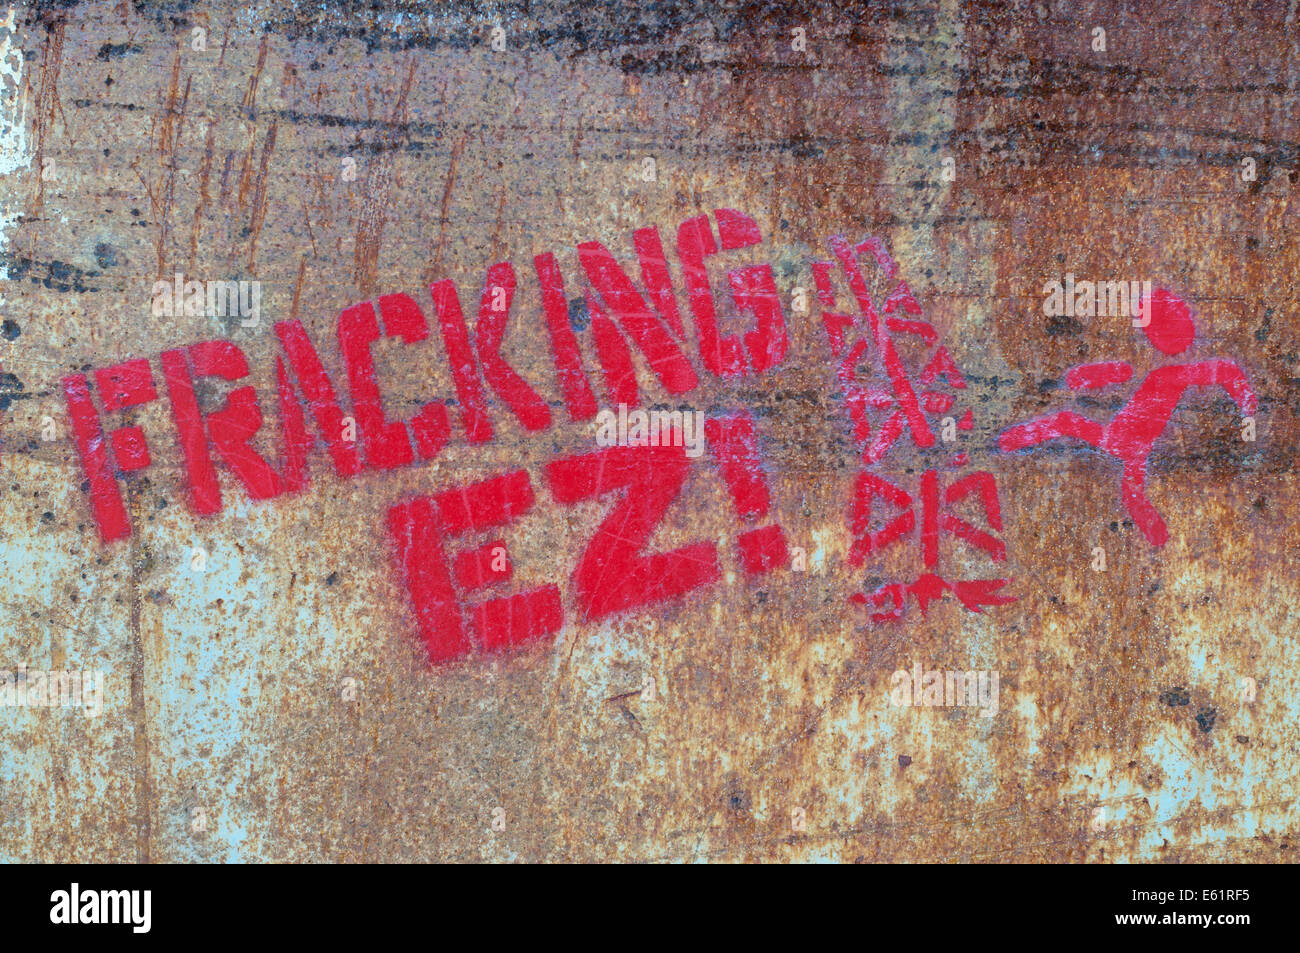 Graffiti che protestavano contro Fracking EZ Zarautz , Gipuzkoa, Spagna Nord, Europa Foto Stock